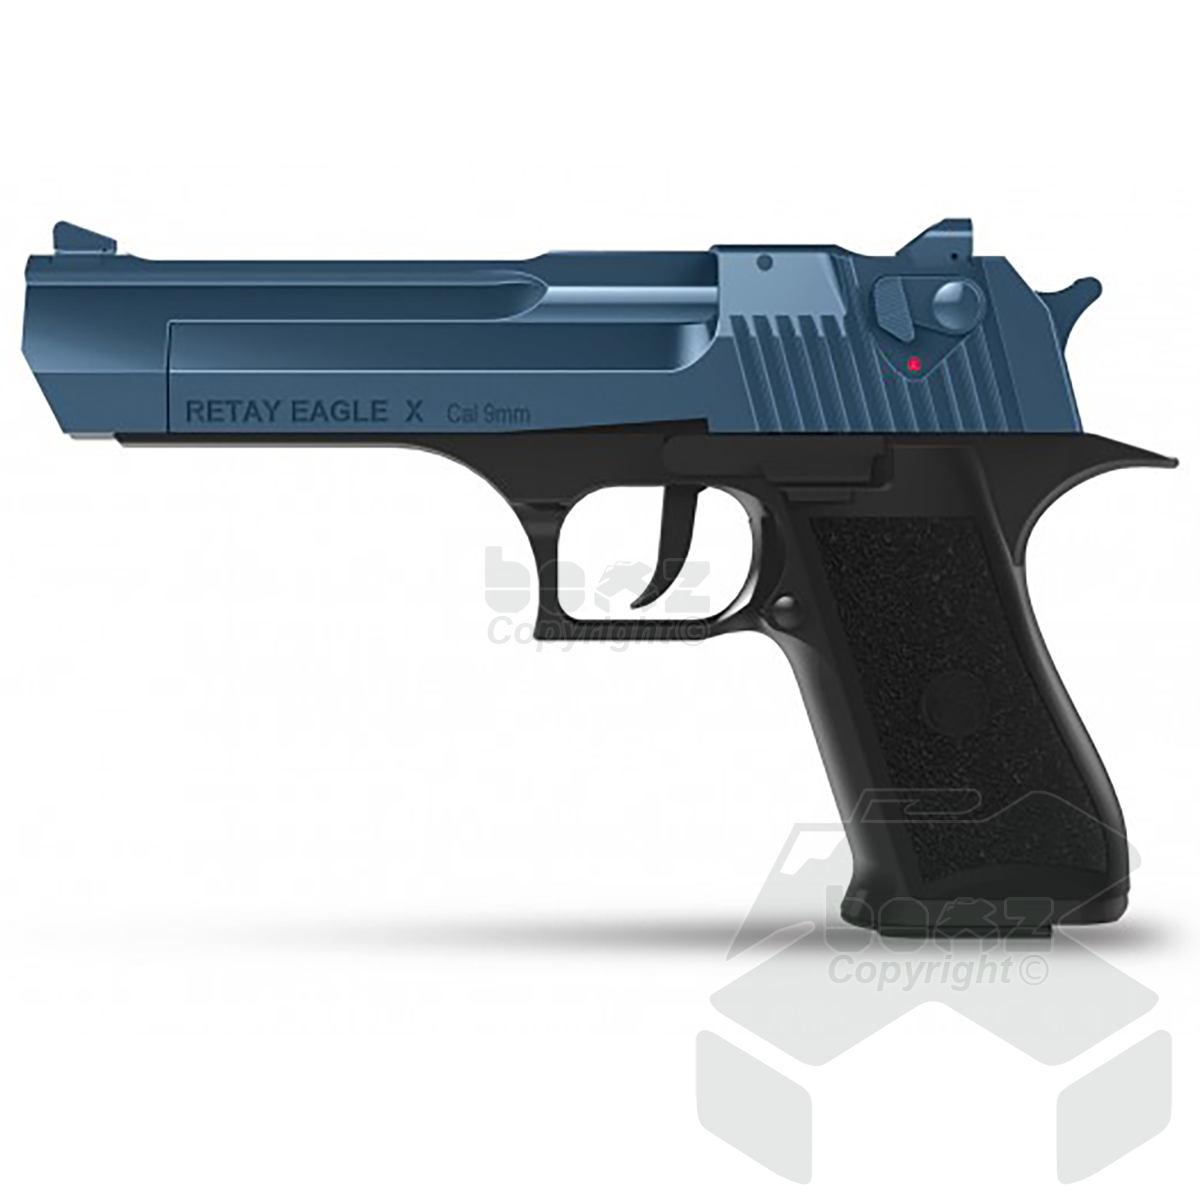 Retay EagleX blank firing Pistol - 9mm - Black